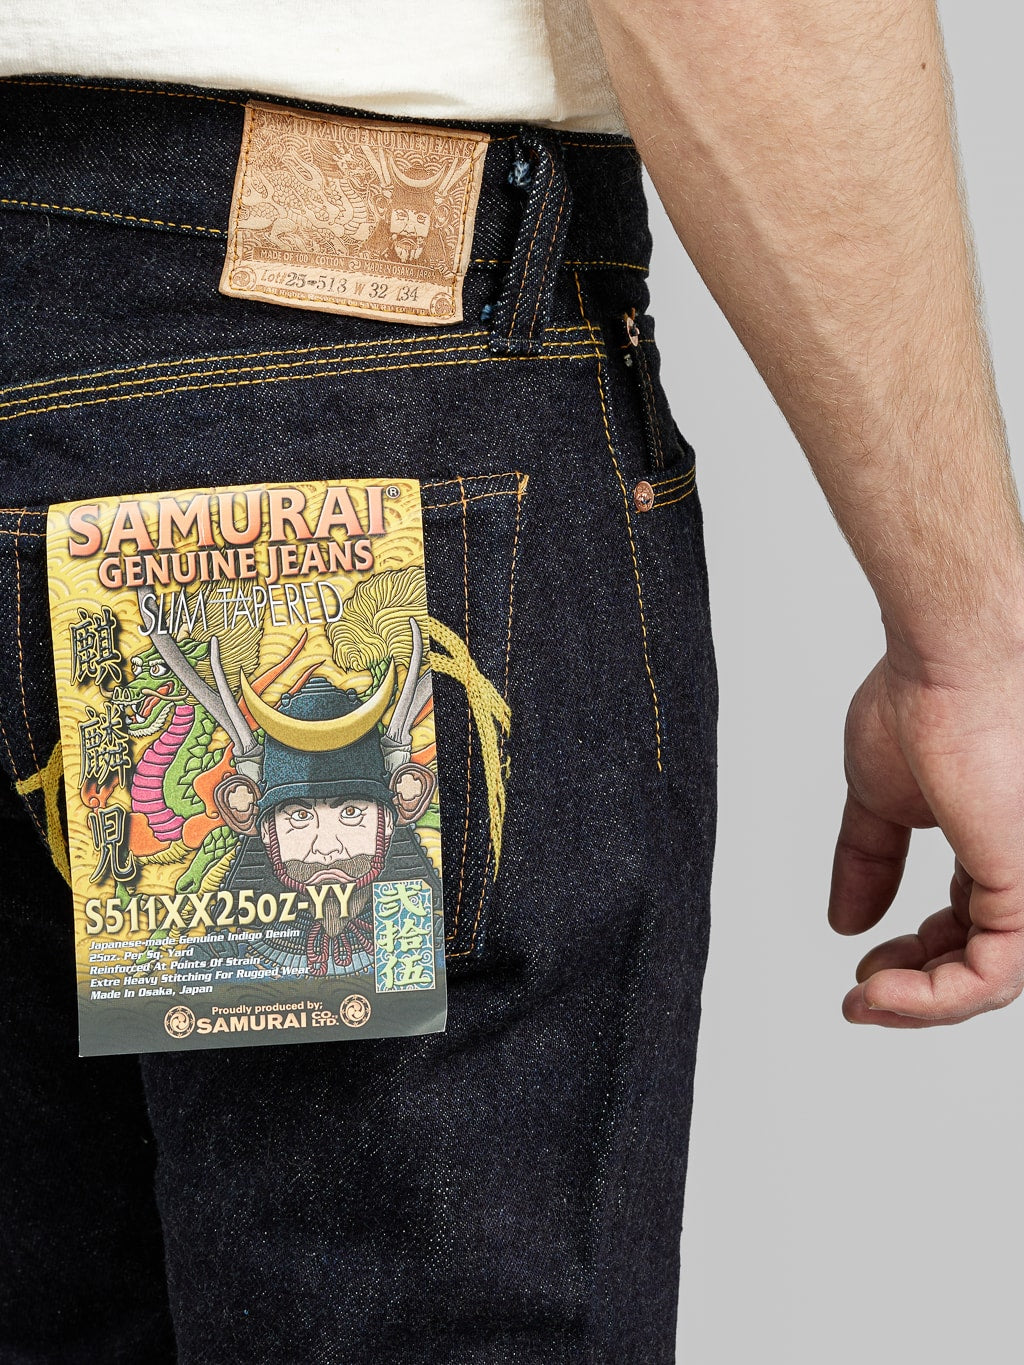 Samurai Jeans S511XX 25oz Kirinji Slim Tapered selvedge Jeans pocket flasher